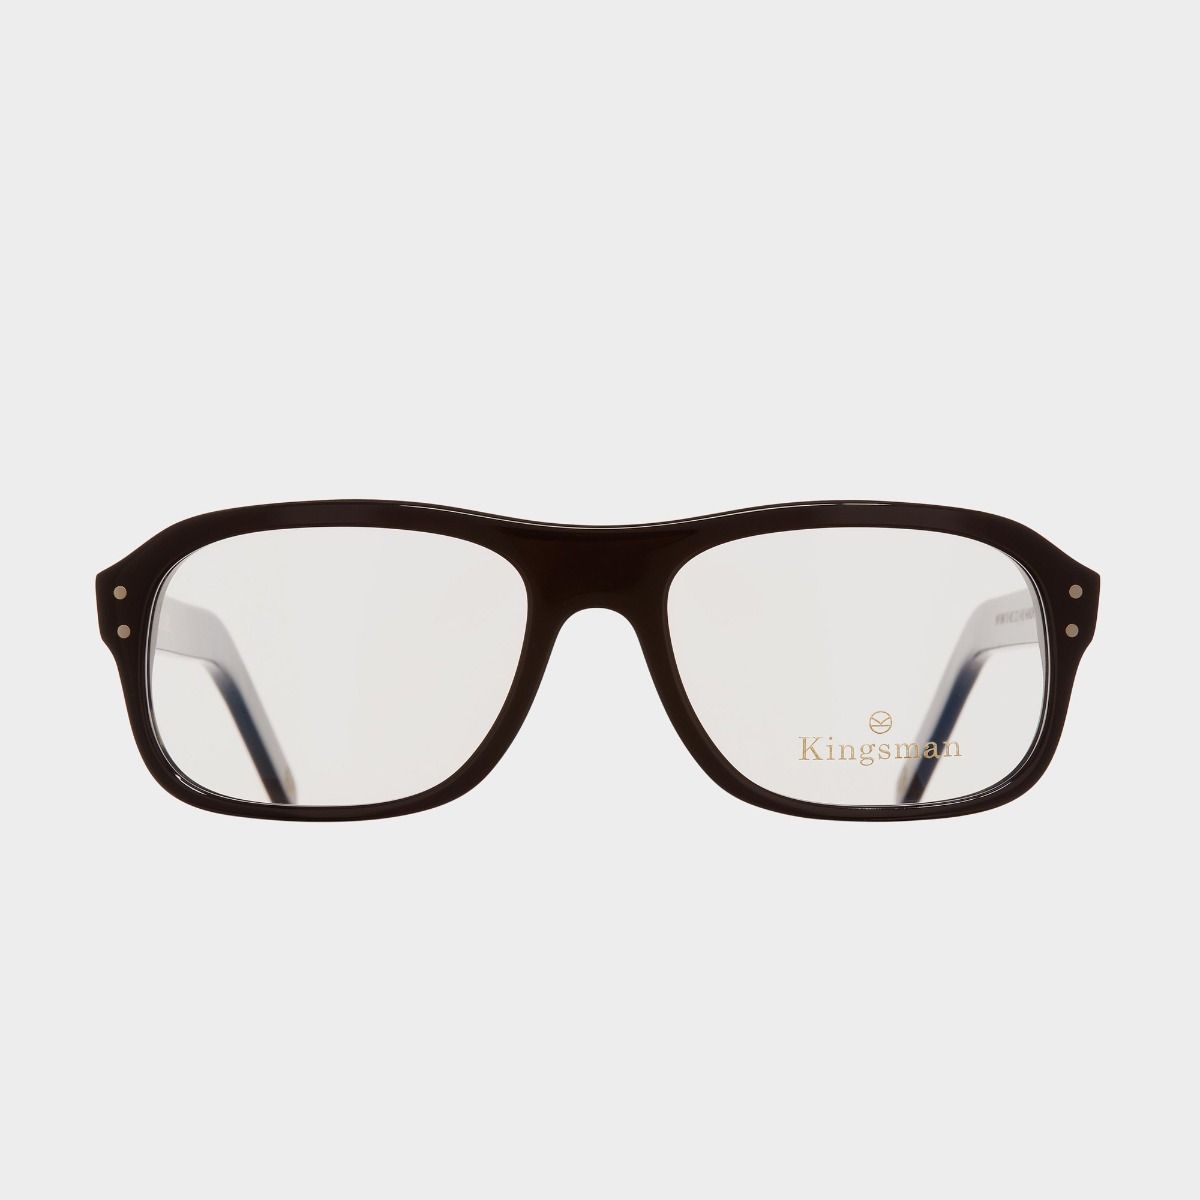 Cutler and Gross, 0847V2 Kingsman Optical Aviator Glasses - Black